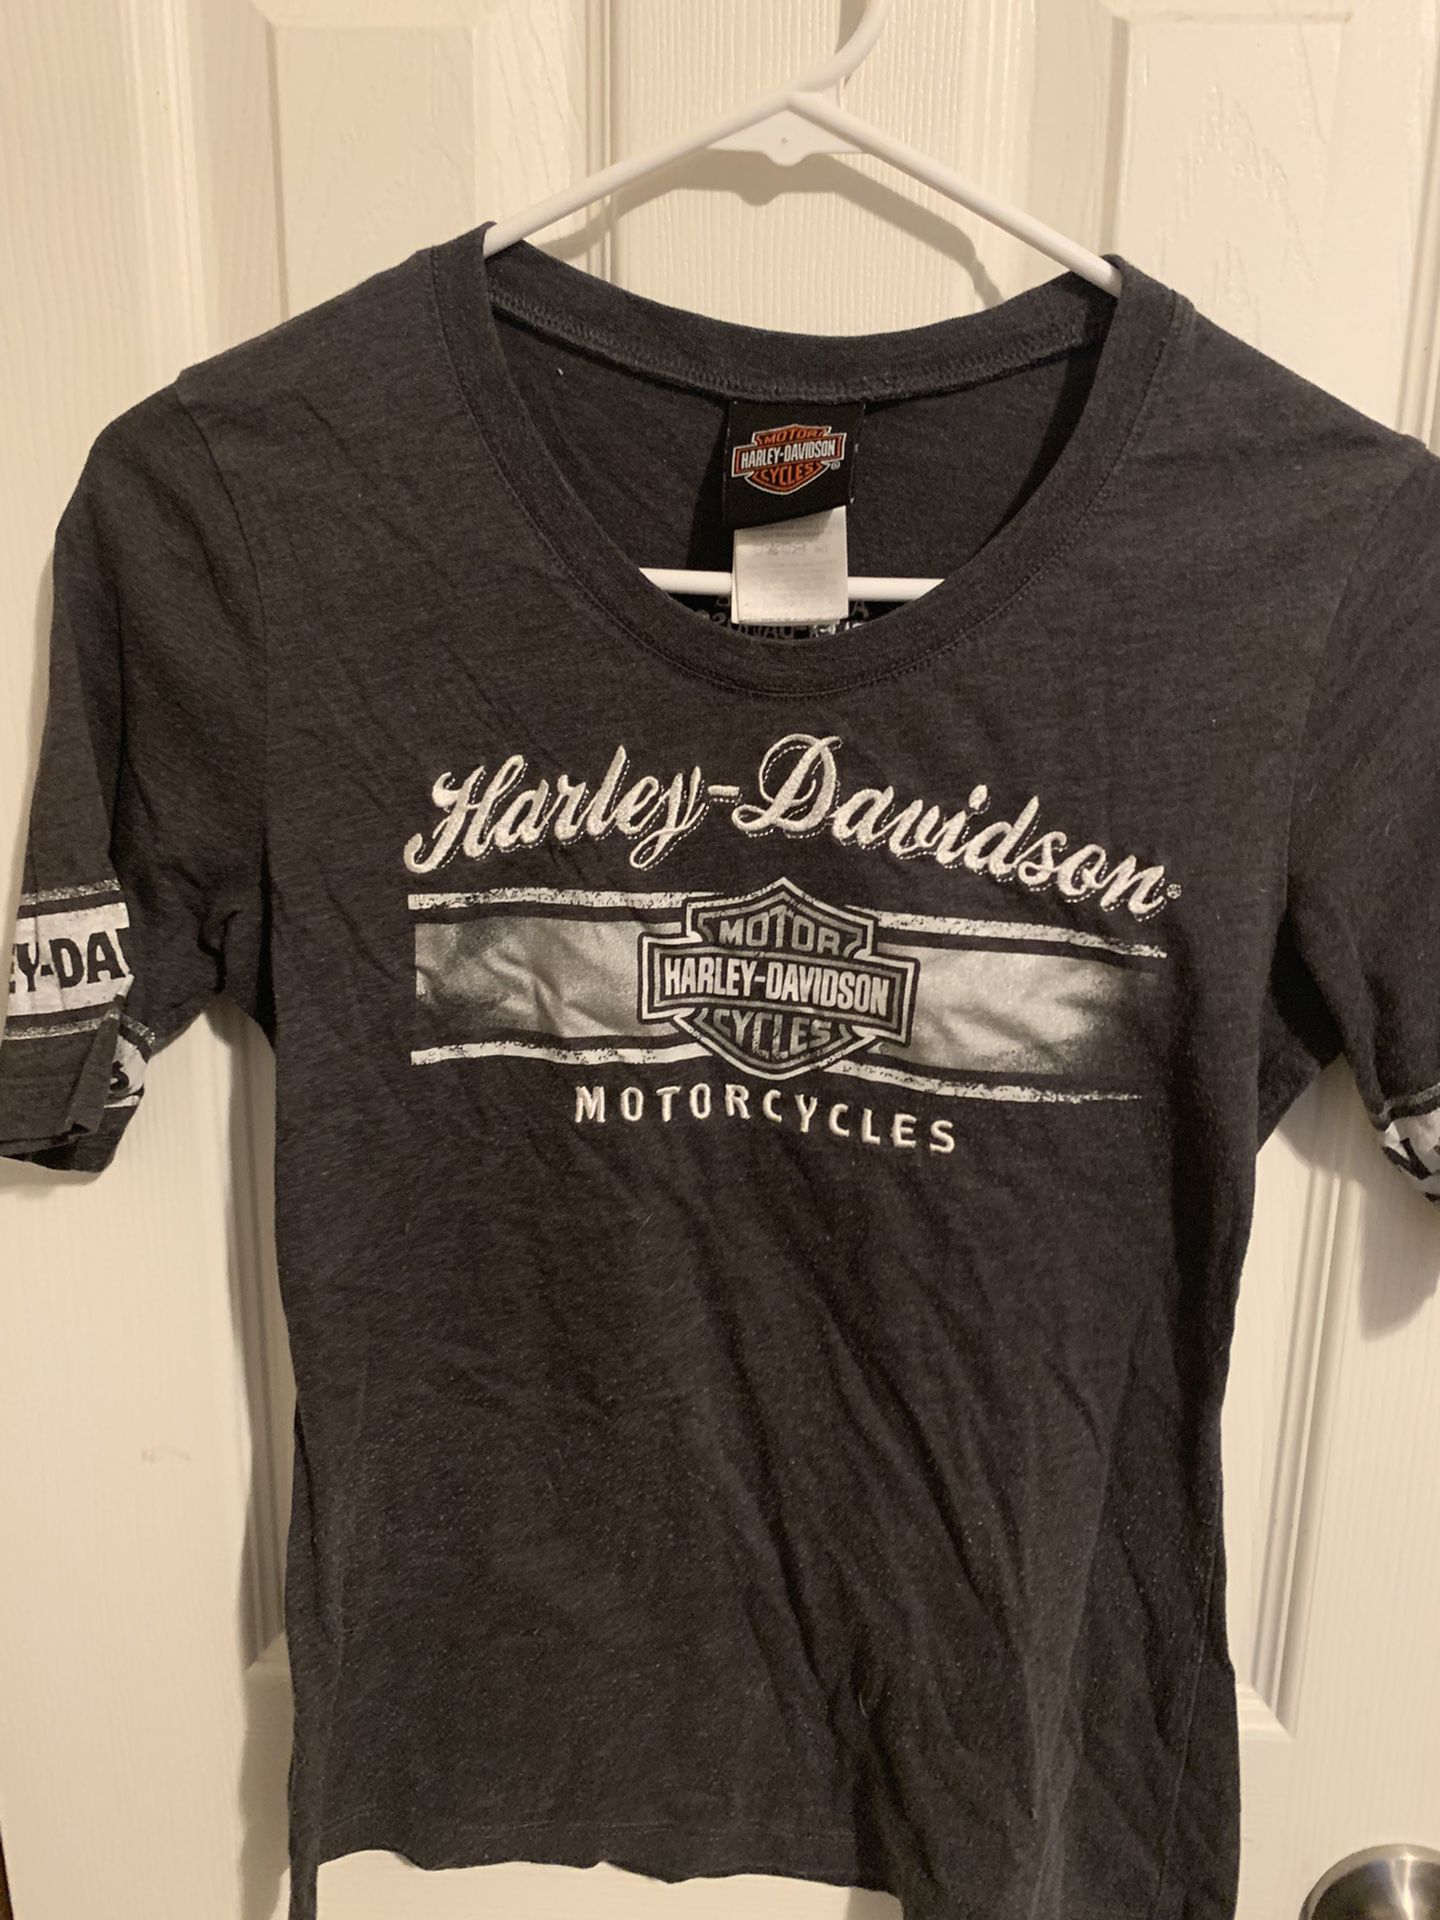 Harley Davidson Tees And Long Sleeves